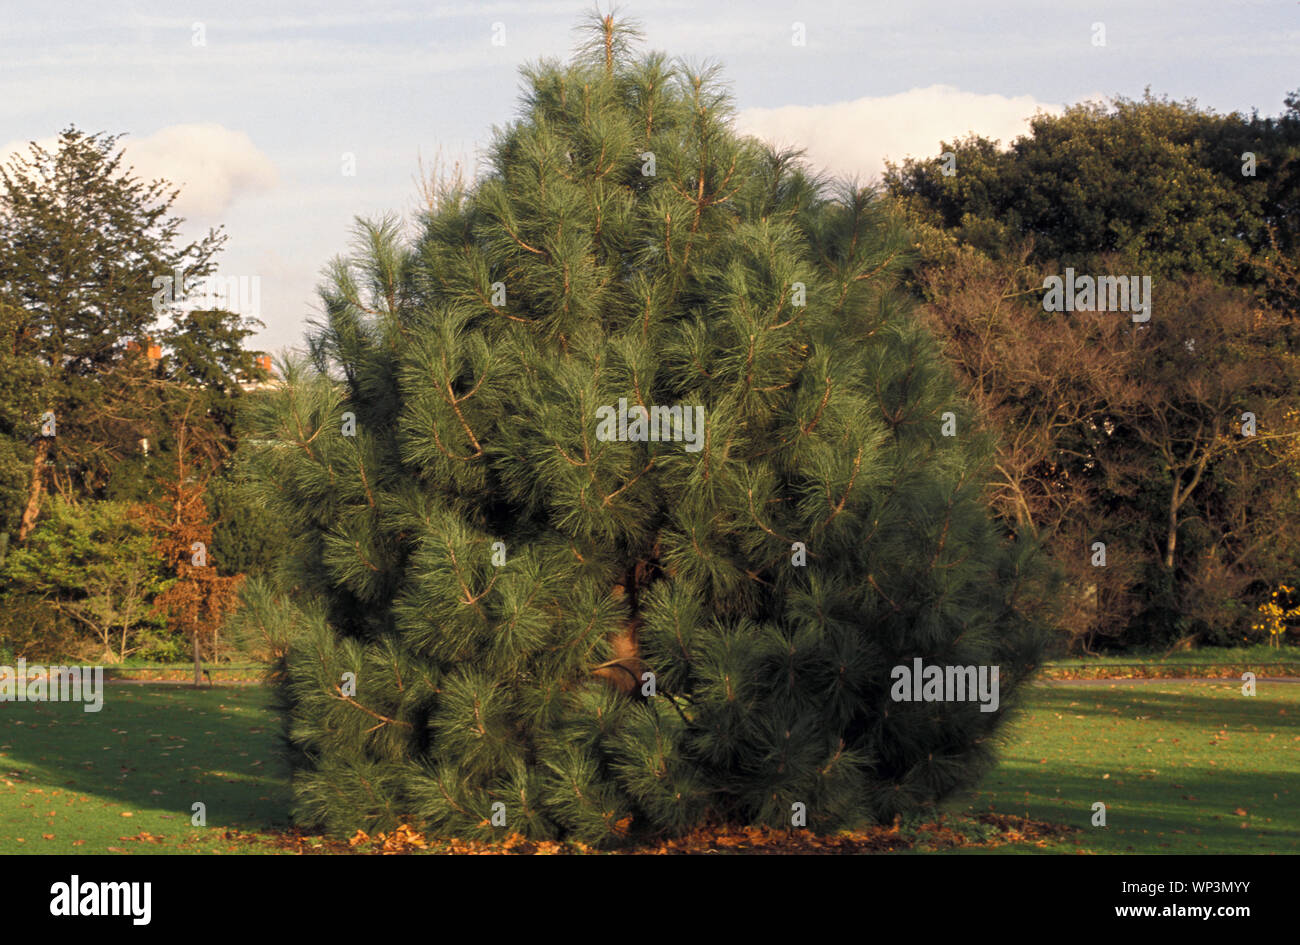 El pino de Coulter o pino de cono grande, Pinus coulteri, es nativo de las montañas costeras del sur de California y el norte de Baja California. Foto de stock